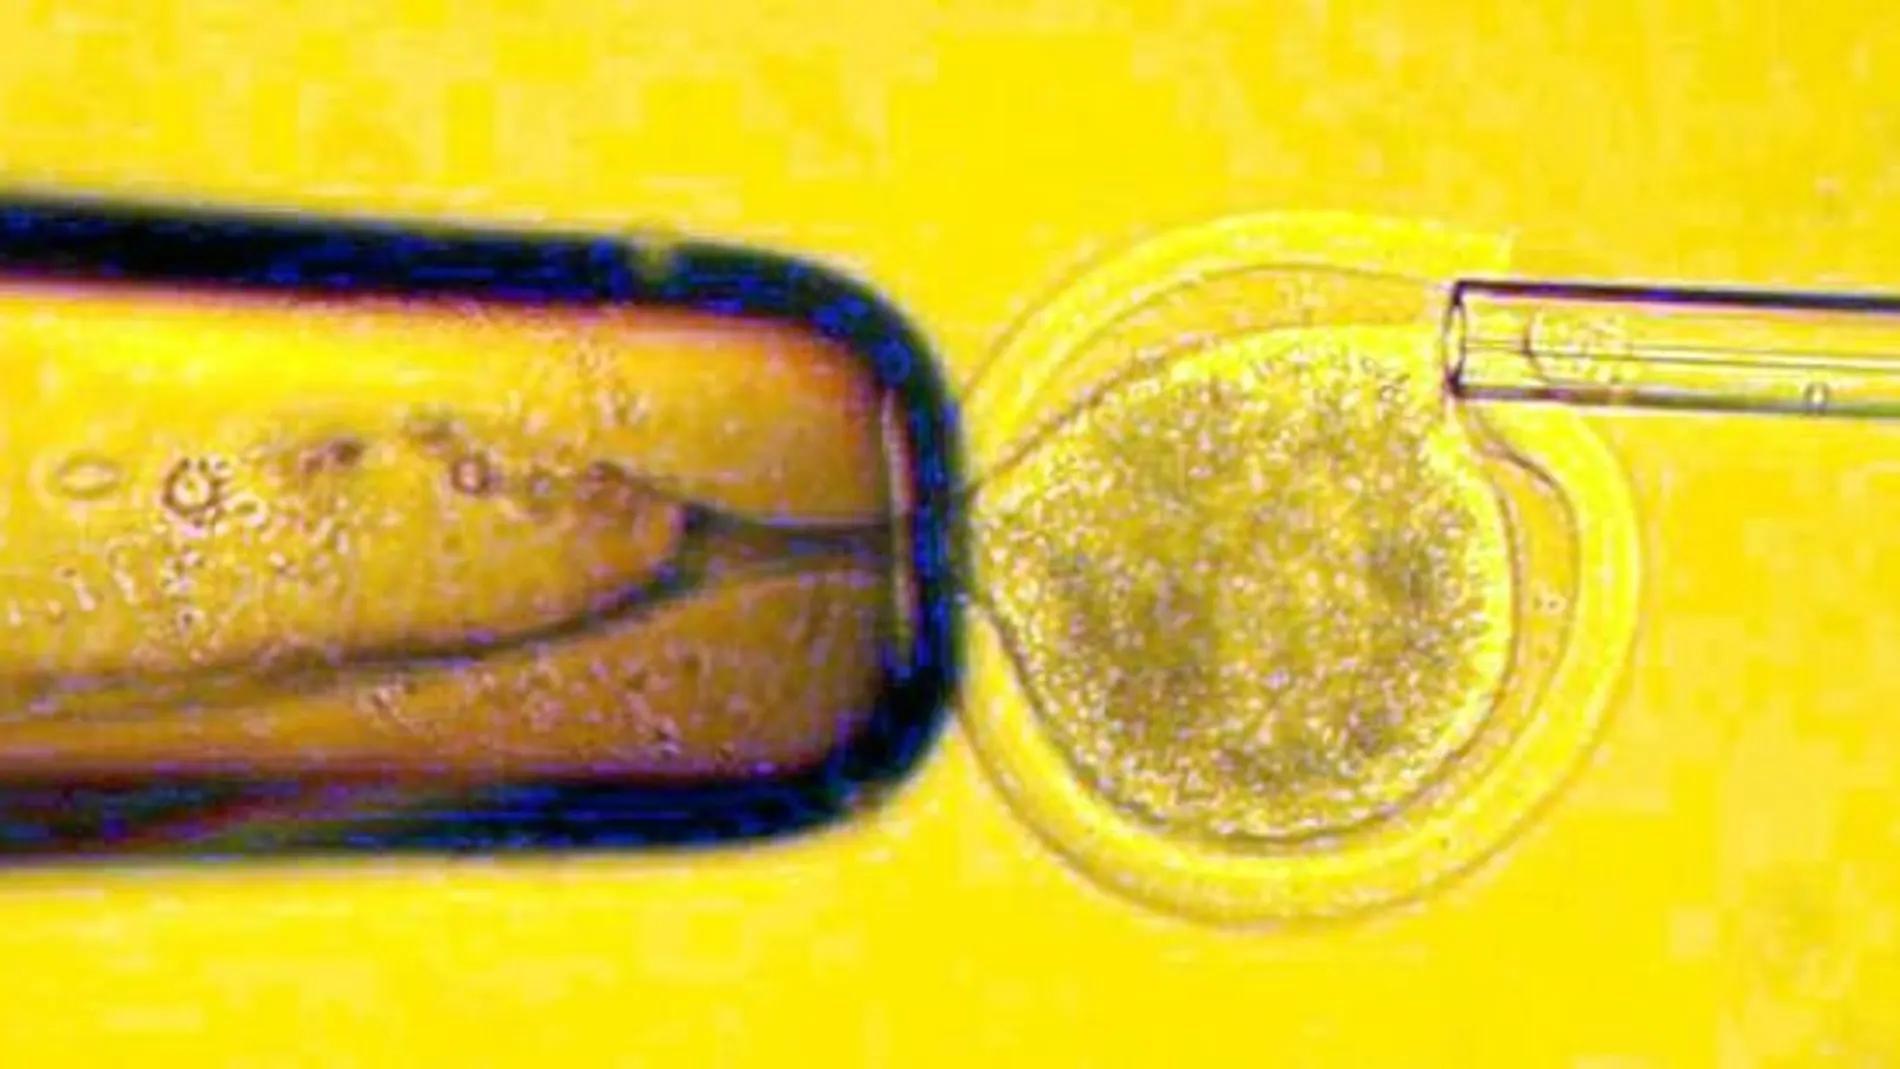 Imagen al microscopio de una inseminación artificial